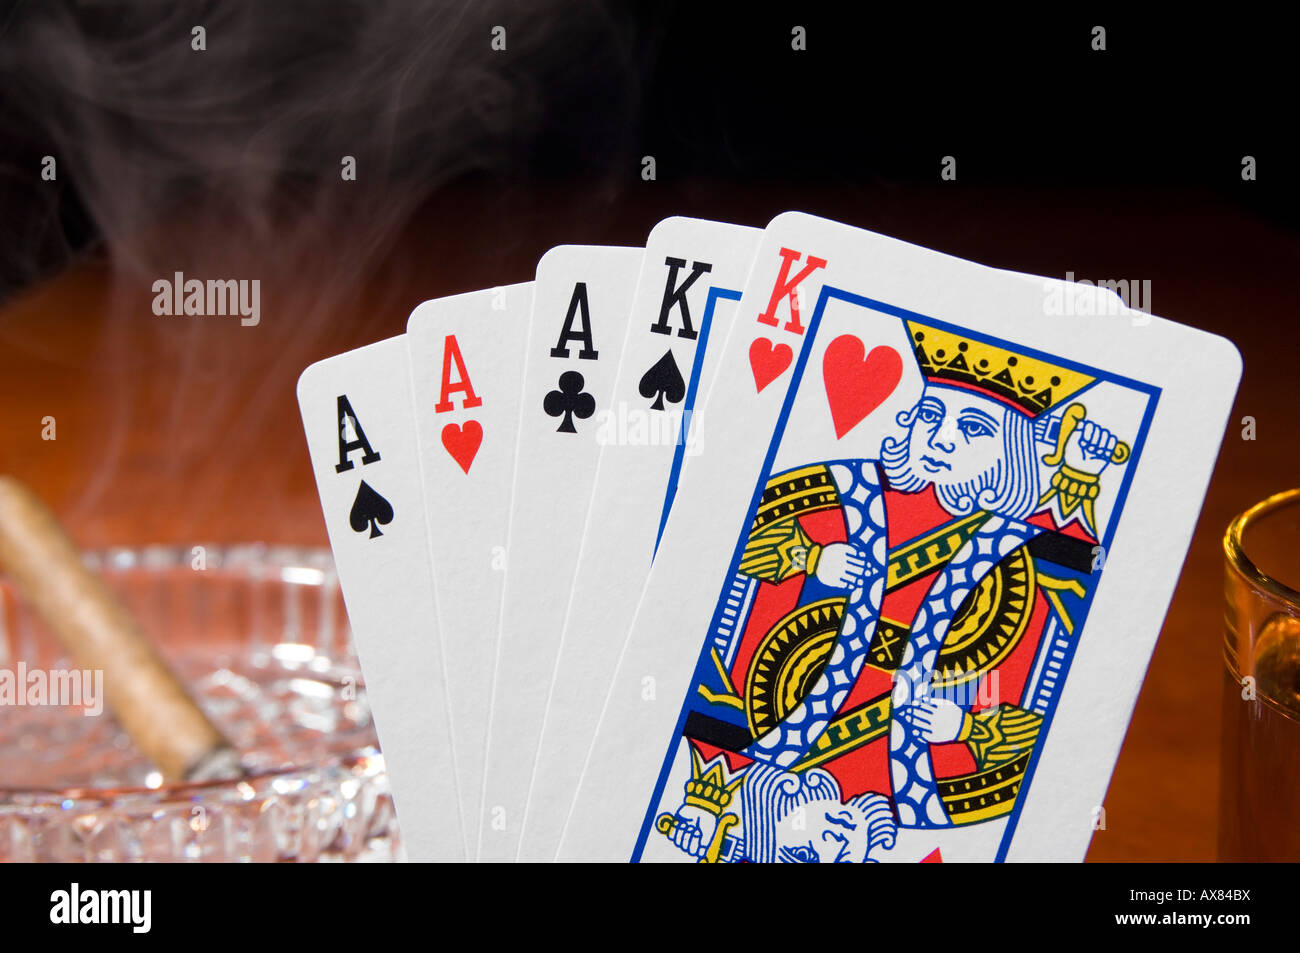 Una mano di poker che mostra le voci ACE-high full house con un sigaro di fumare sul tavolo Foto Stock